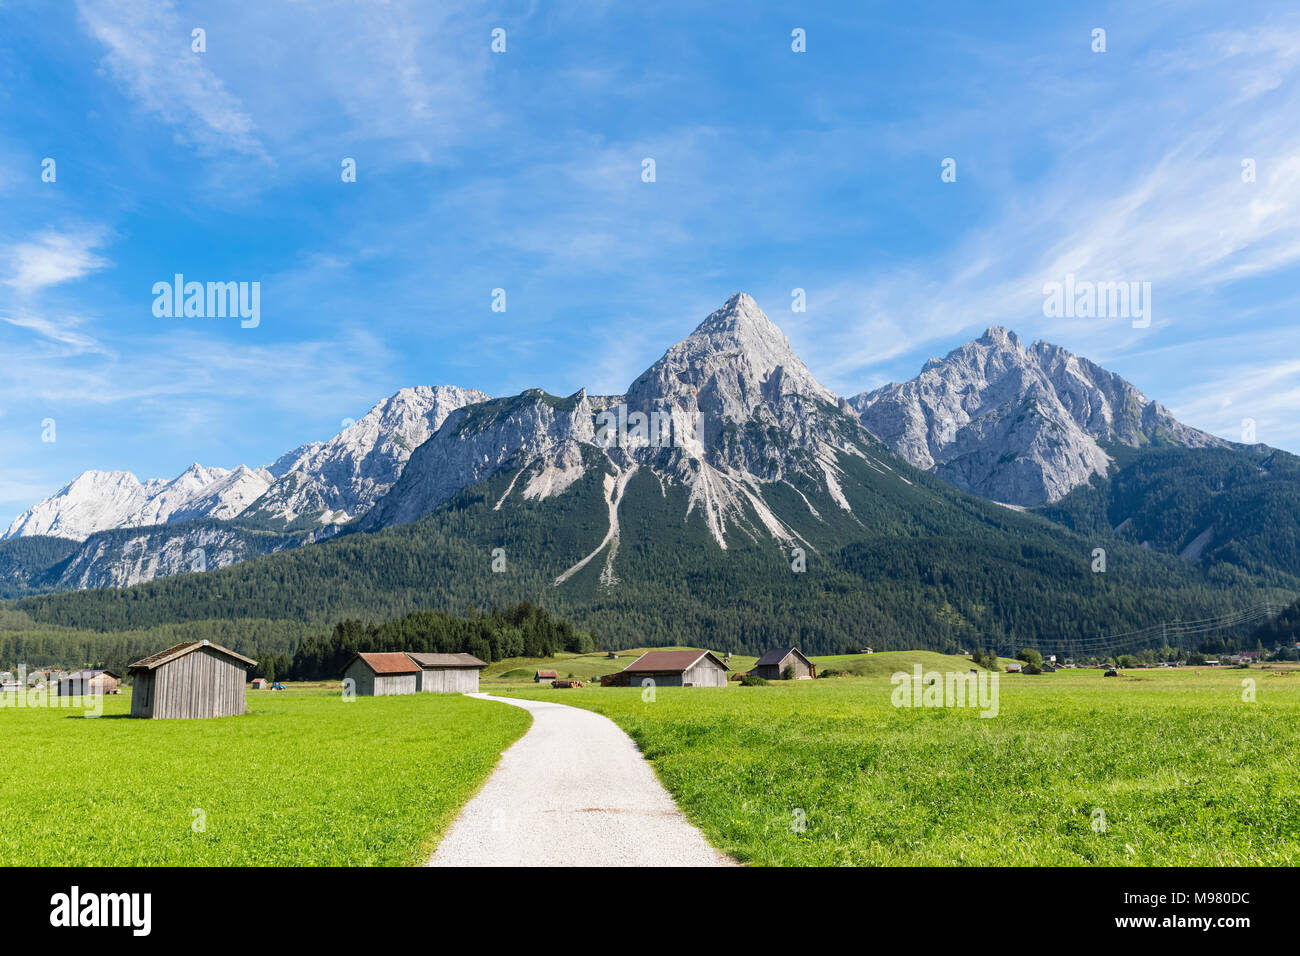 Austria, Tyrol, Lermoos, Ehrwalder Becken, View to Ehrwalder Sonnenspitze, Gruenstein, Ehrwald, Mieminger Kette Stock Photo